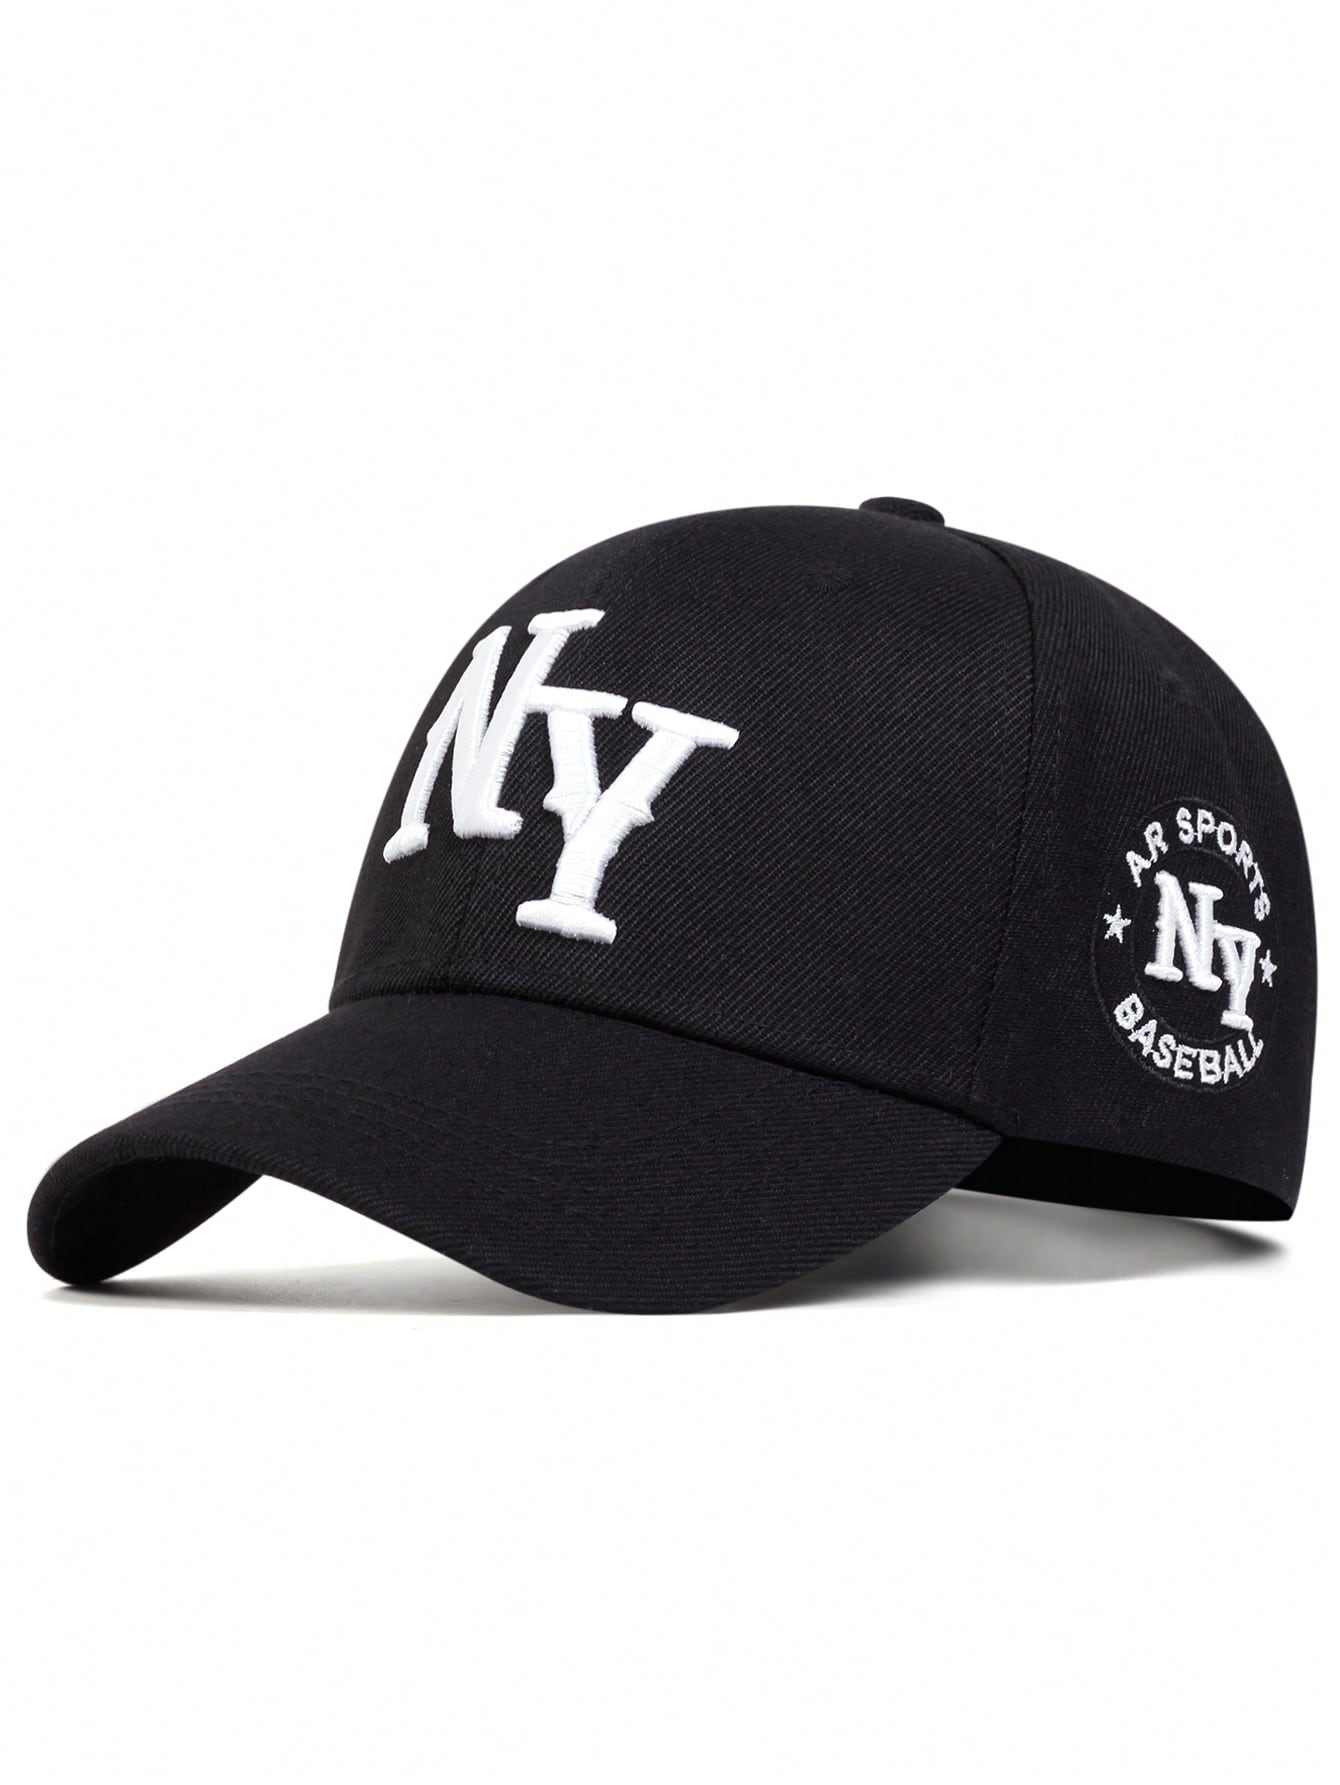 1 шт. мужская бейсболка с вышивкой букв «Нью-Йорк», черный мужская бейсболка летняя спортивная солнцезащитная бейсболка для улицы модная крутая быстросохнущая сетчатая кепка